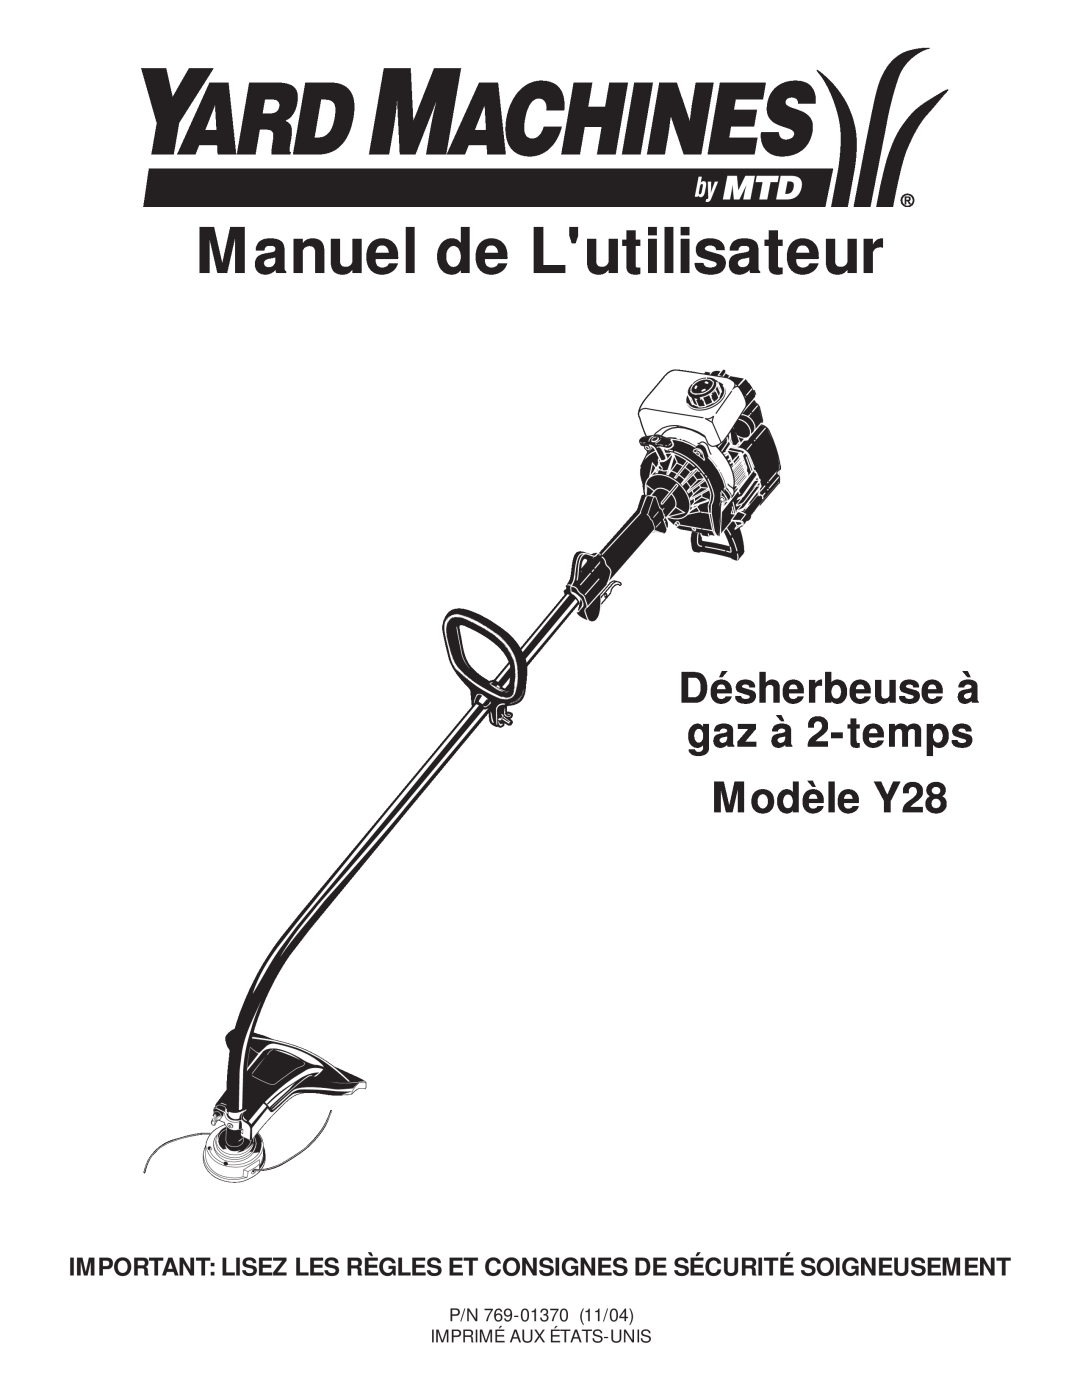 MTD manual Manuel de Lutilisateur, Désherbeuse à gaz à 2-temps Modèle Y28 